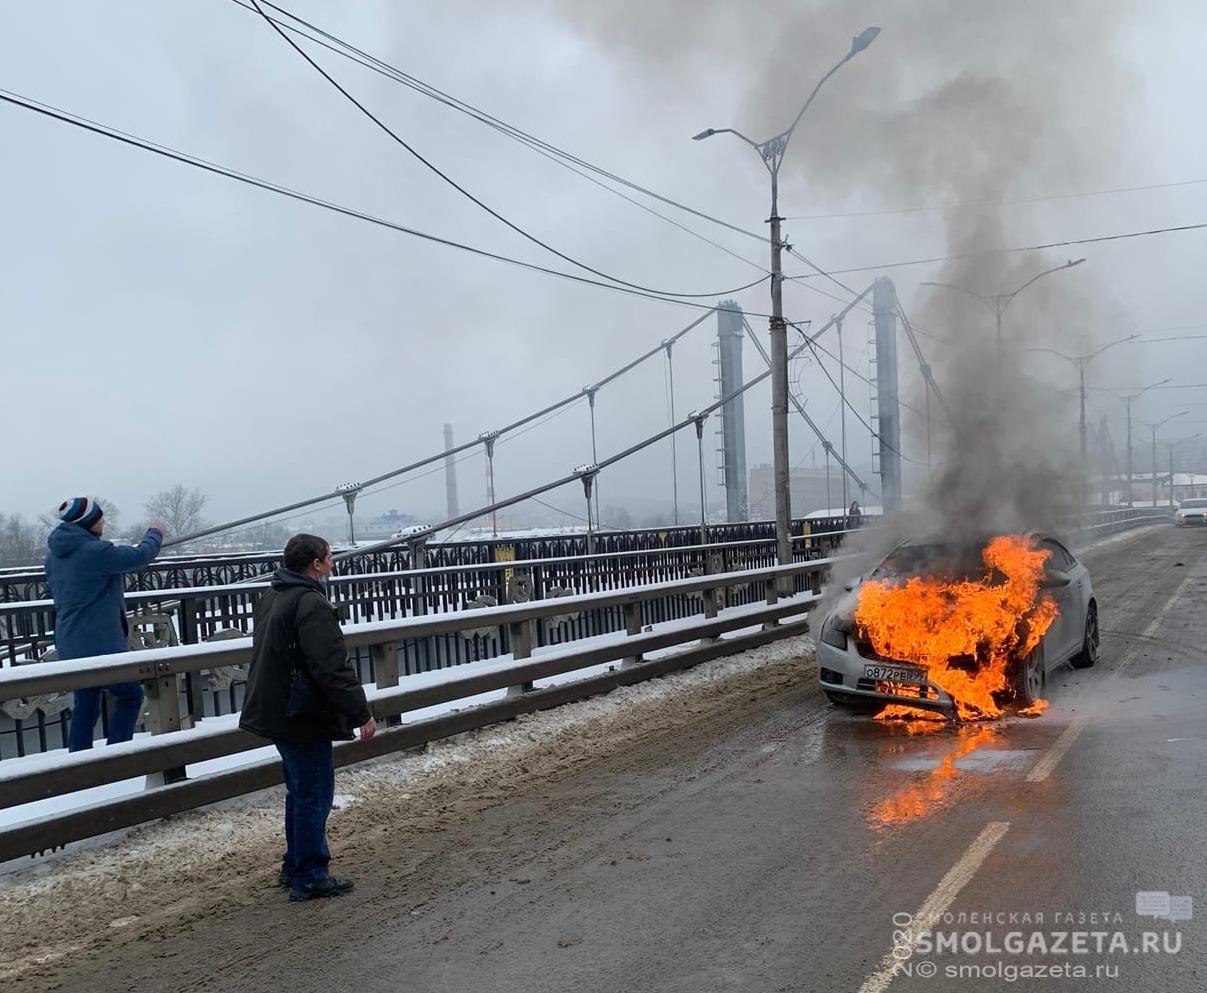 В Смоленске на Успенском мосту загорелась иномарка